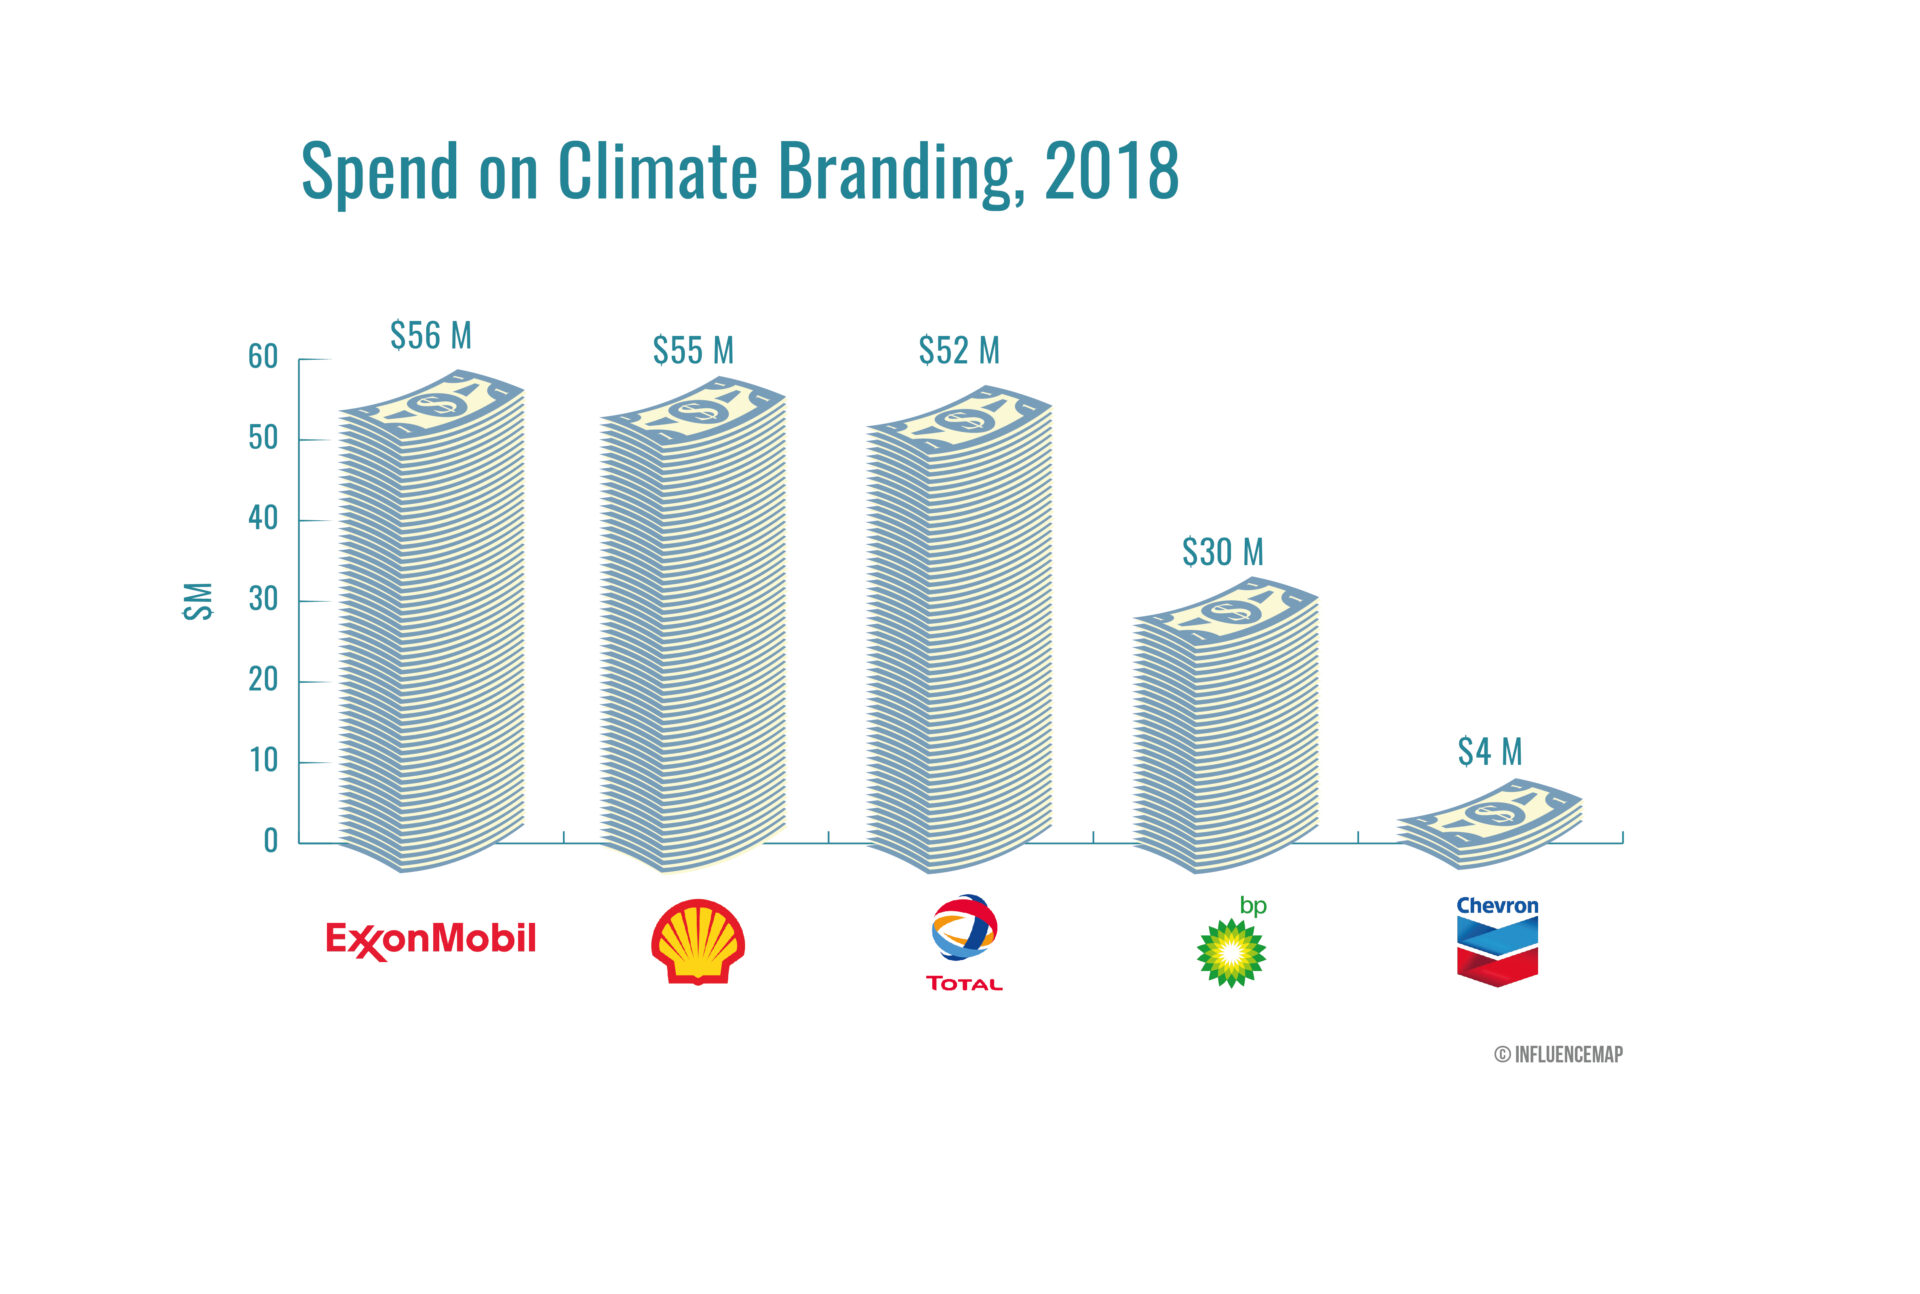 Wykres przedstawiający wydatki na climate branding przez 5 największych koncernów naftowych w 2018 r.